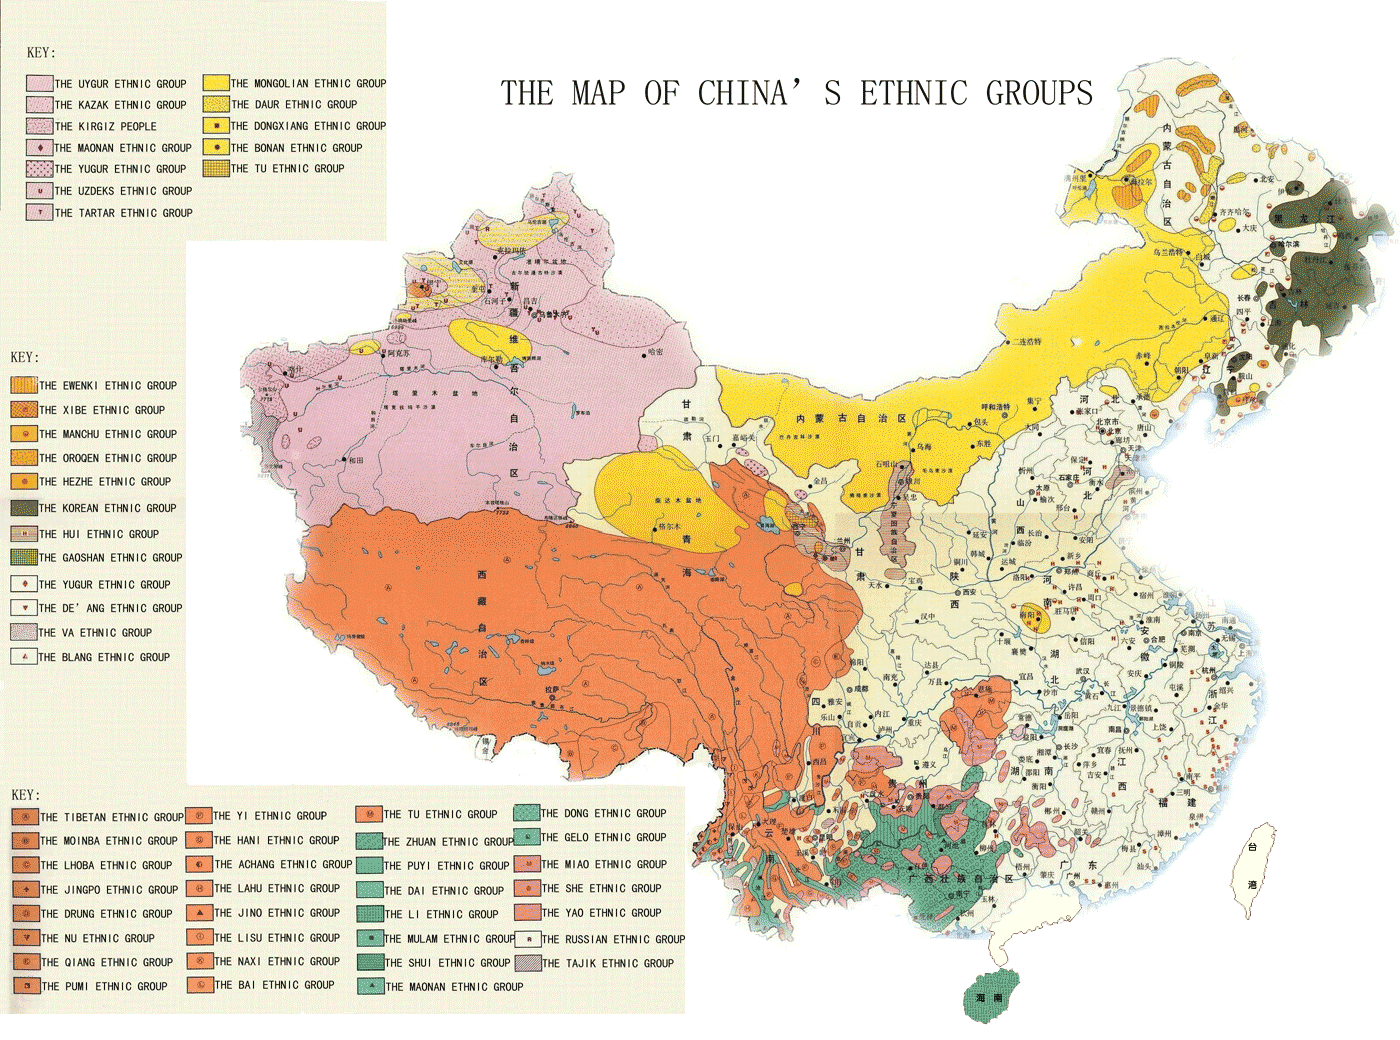 ჩინური საზოგადოების მრავალფეროვნება (56 ეთნიკური უმცირესობა)